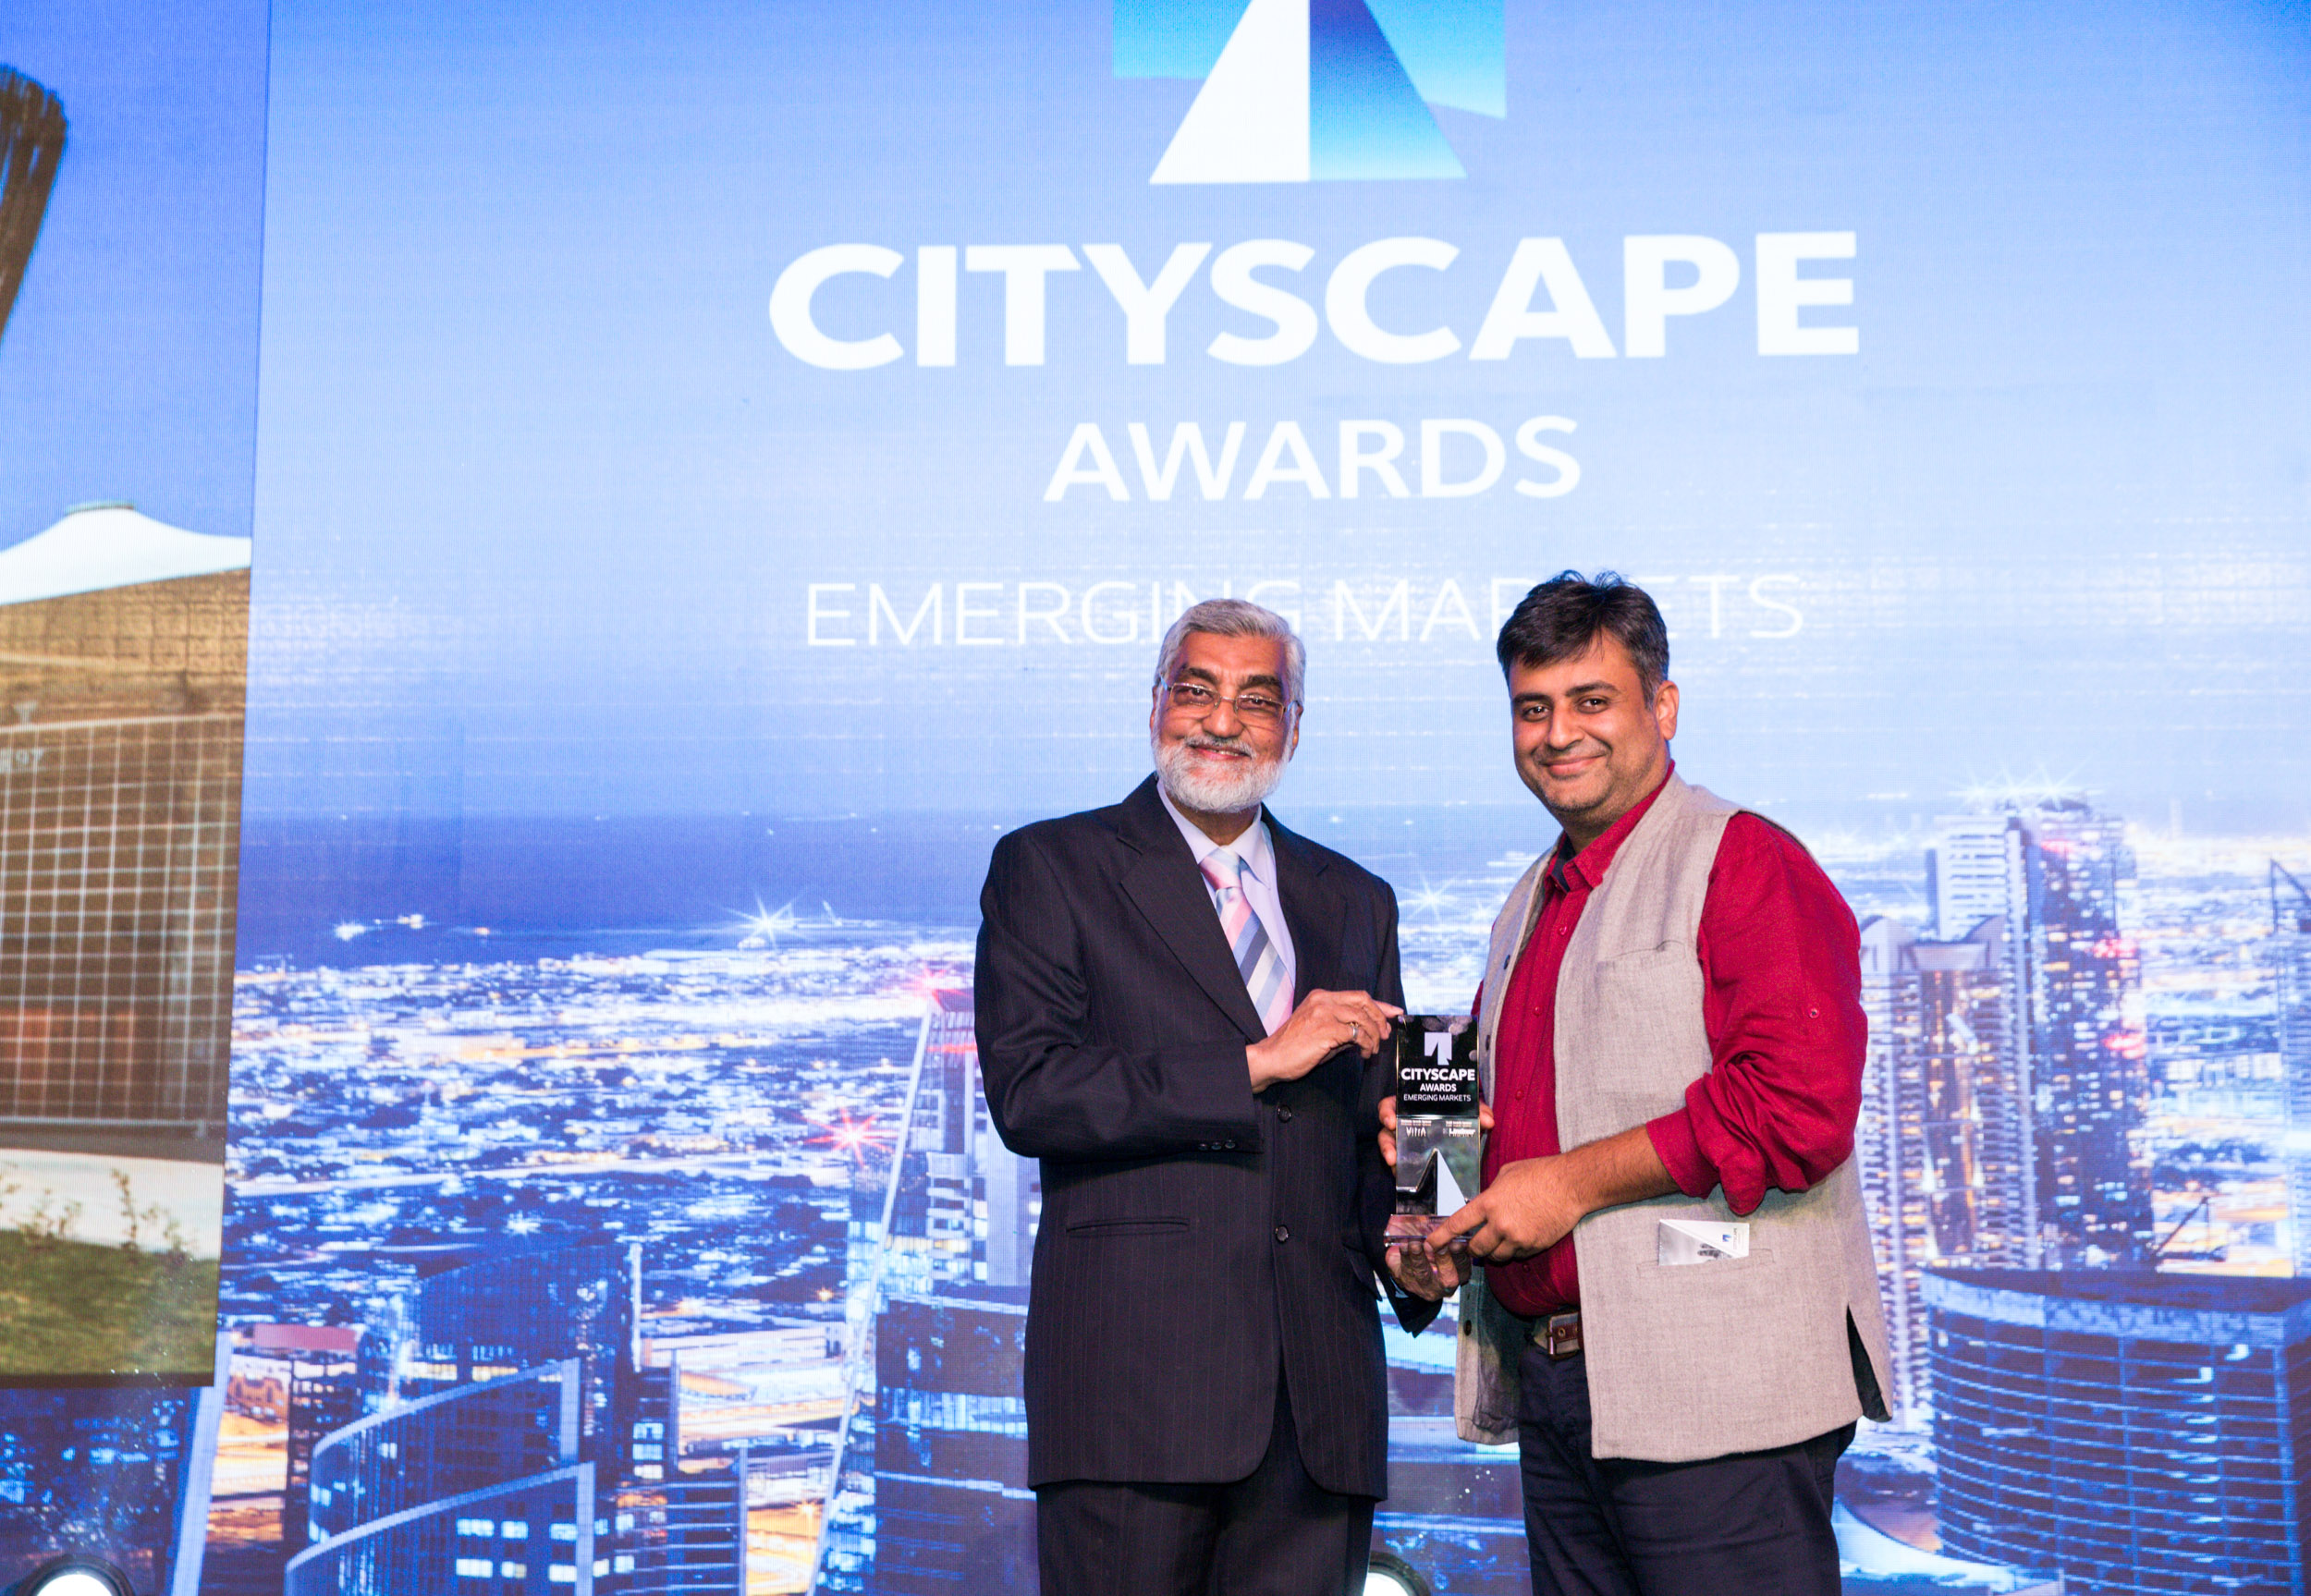 Cityscape Awards